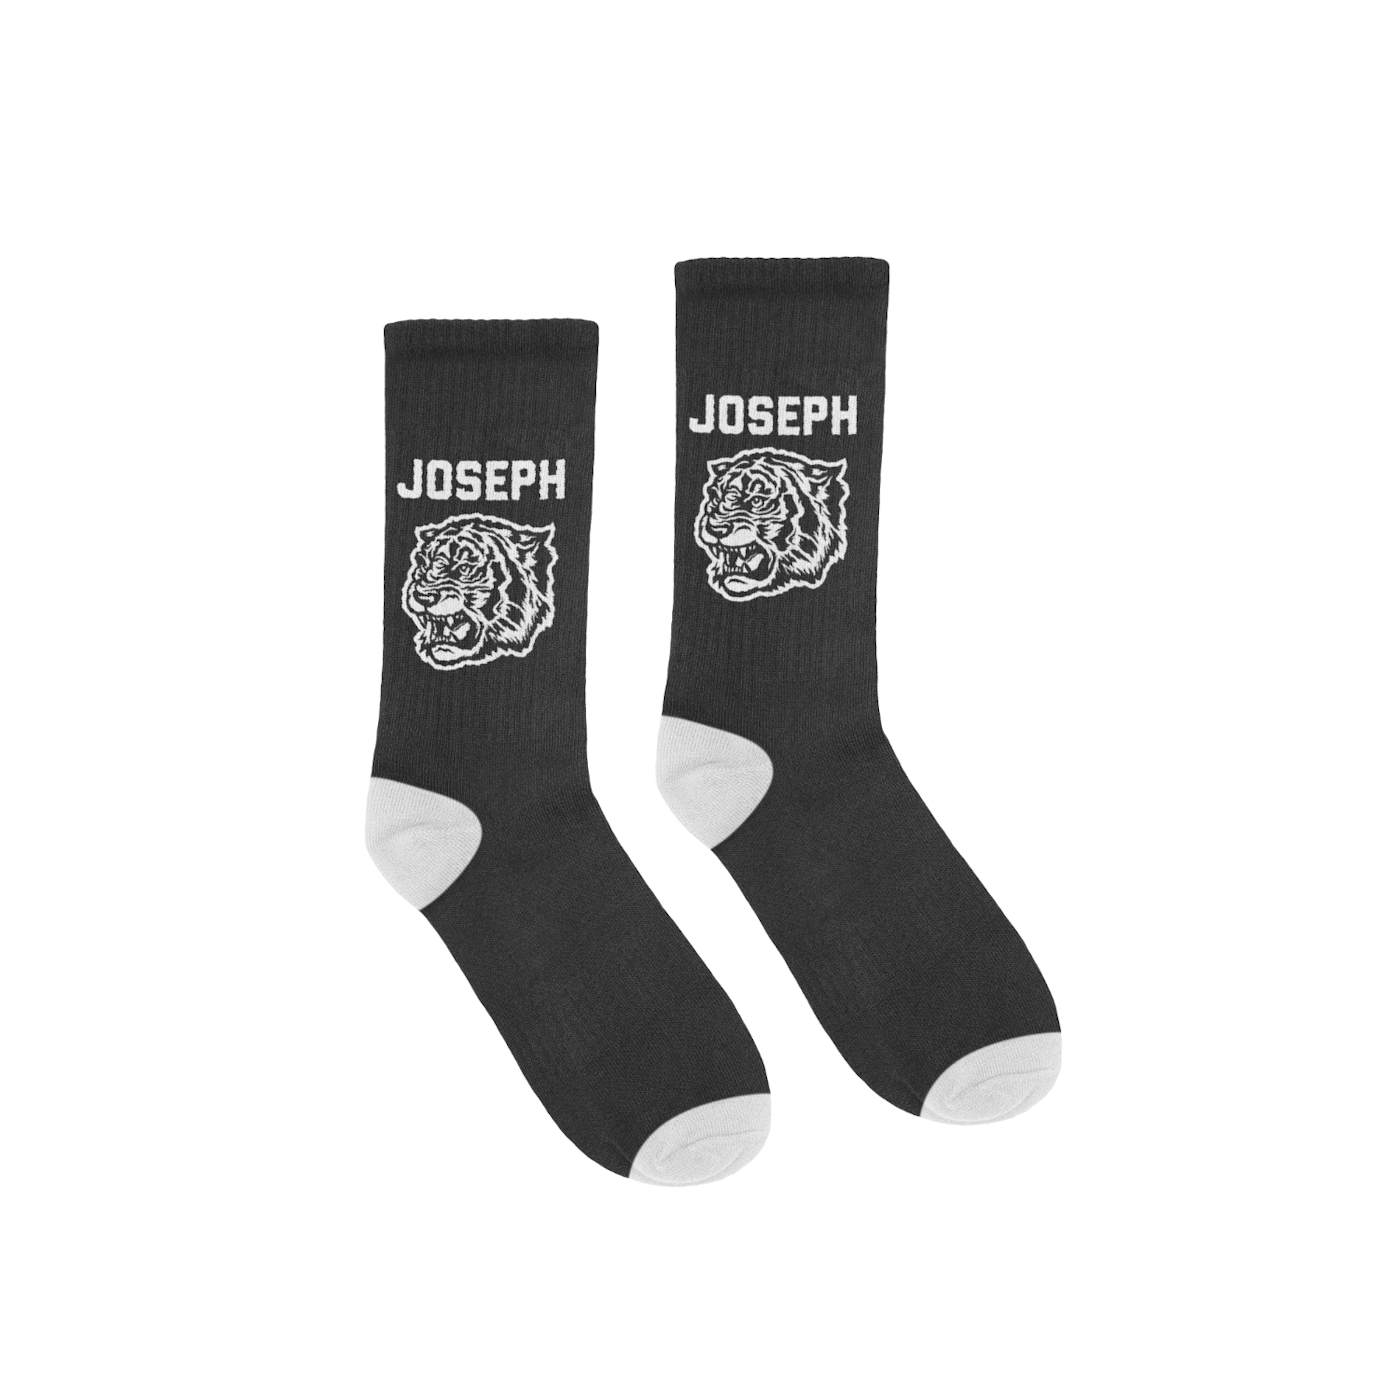 JOSEPH Custom Socks